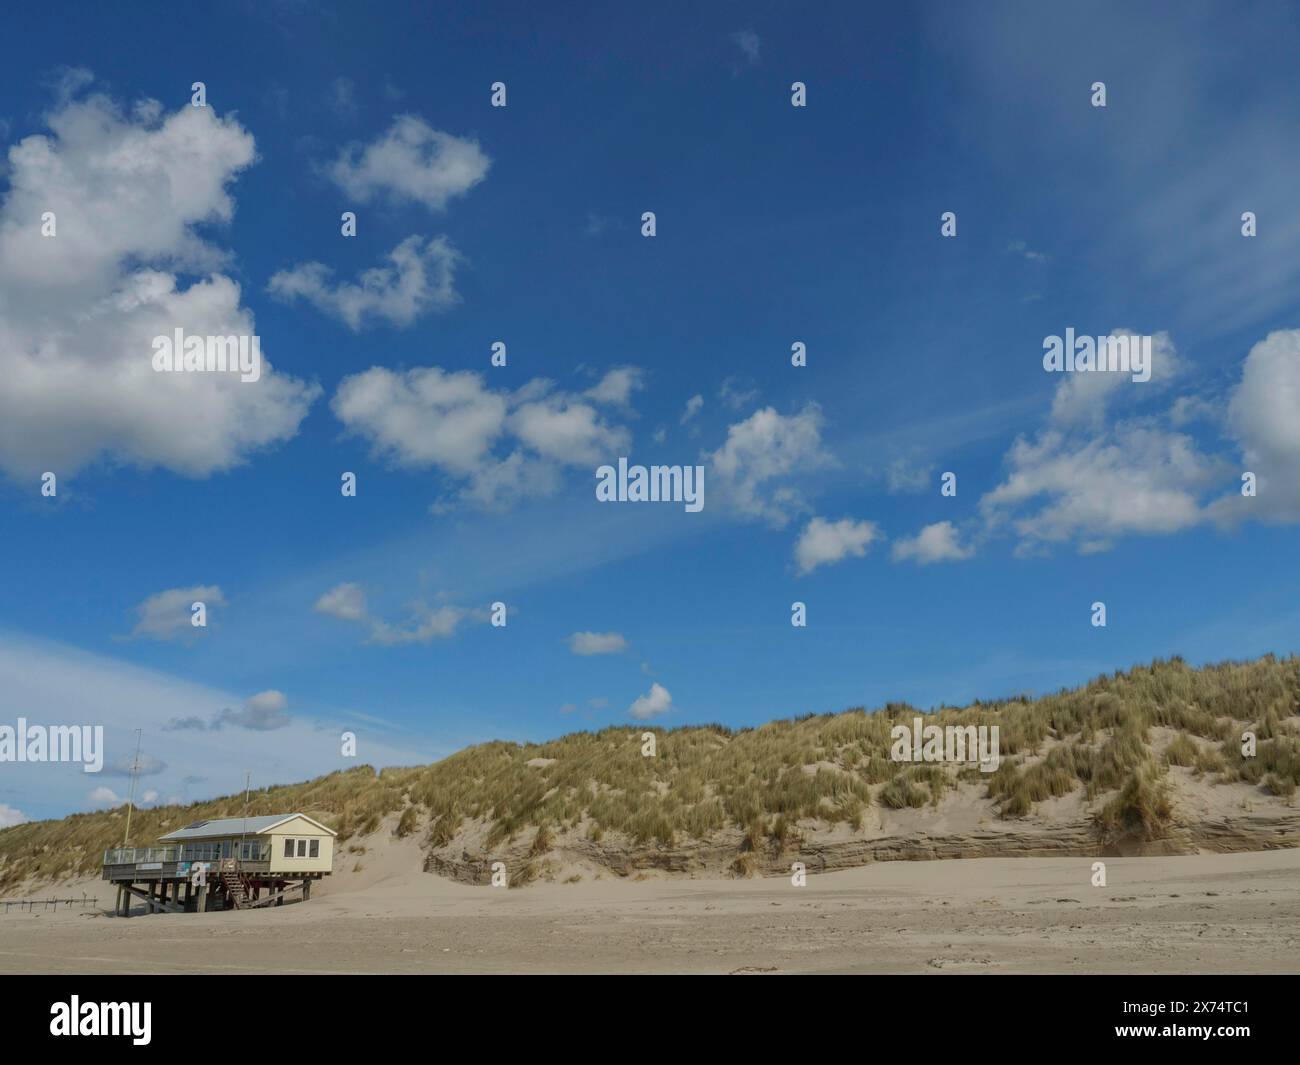 Vista sulla spiaggia con dune erbose e una casa sotto un cielo nuvoloso, nuvole sulla spiaggia con dune sul mare, Hollum, ameland, paesi bassi Foto Stock